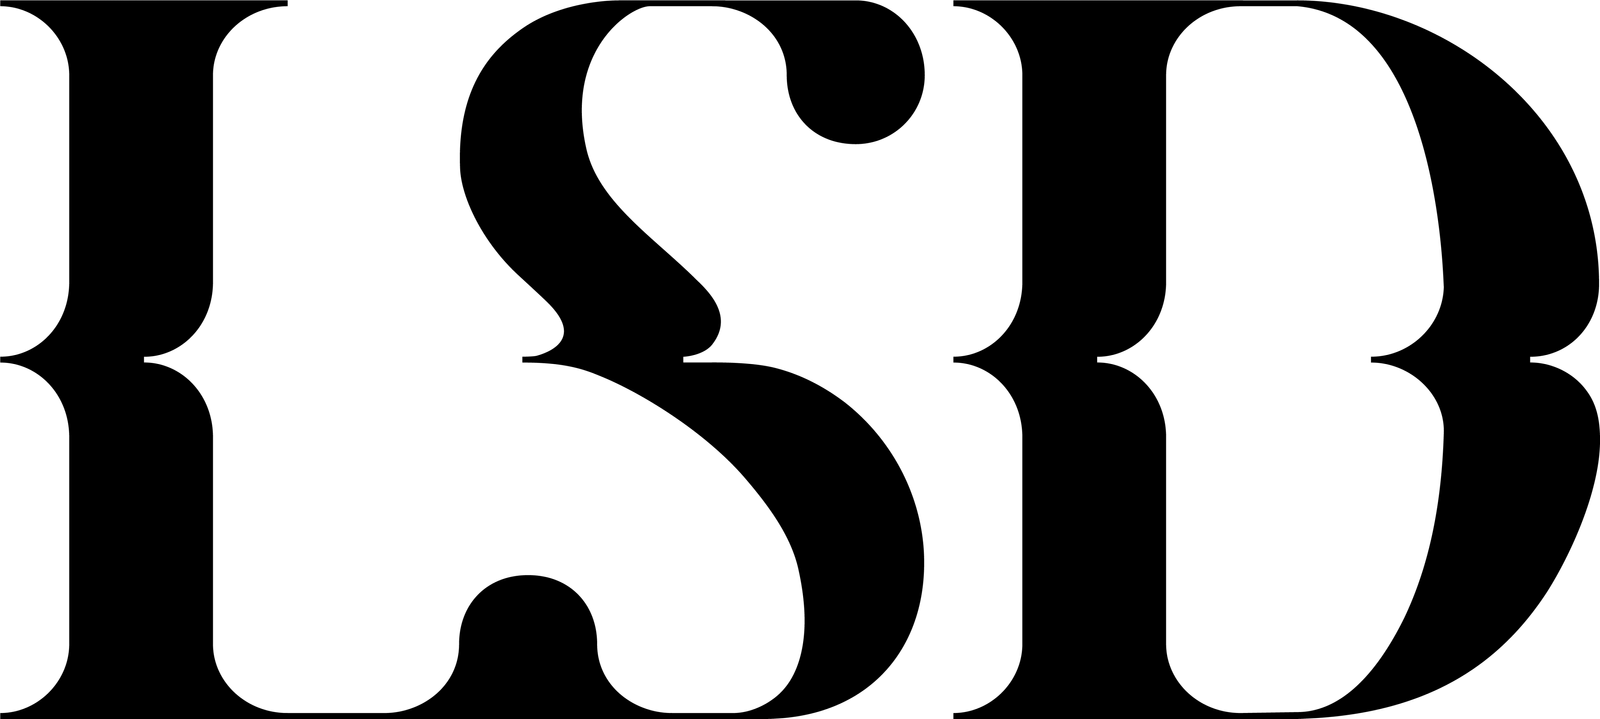 LSD Logo Full Black